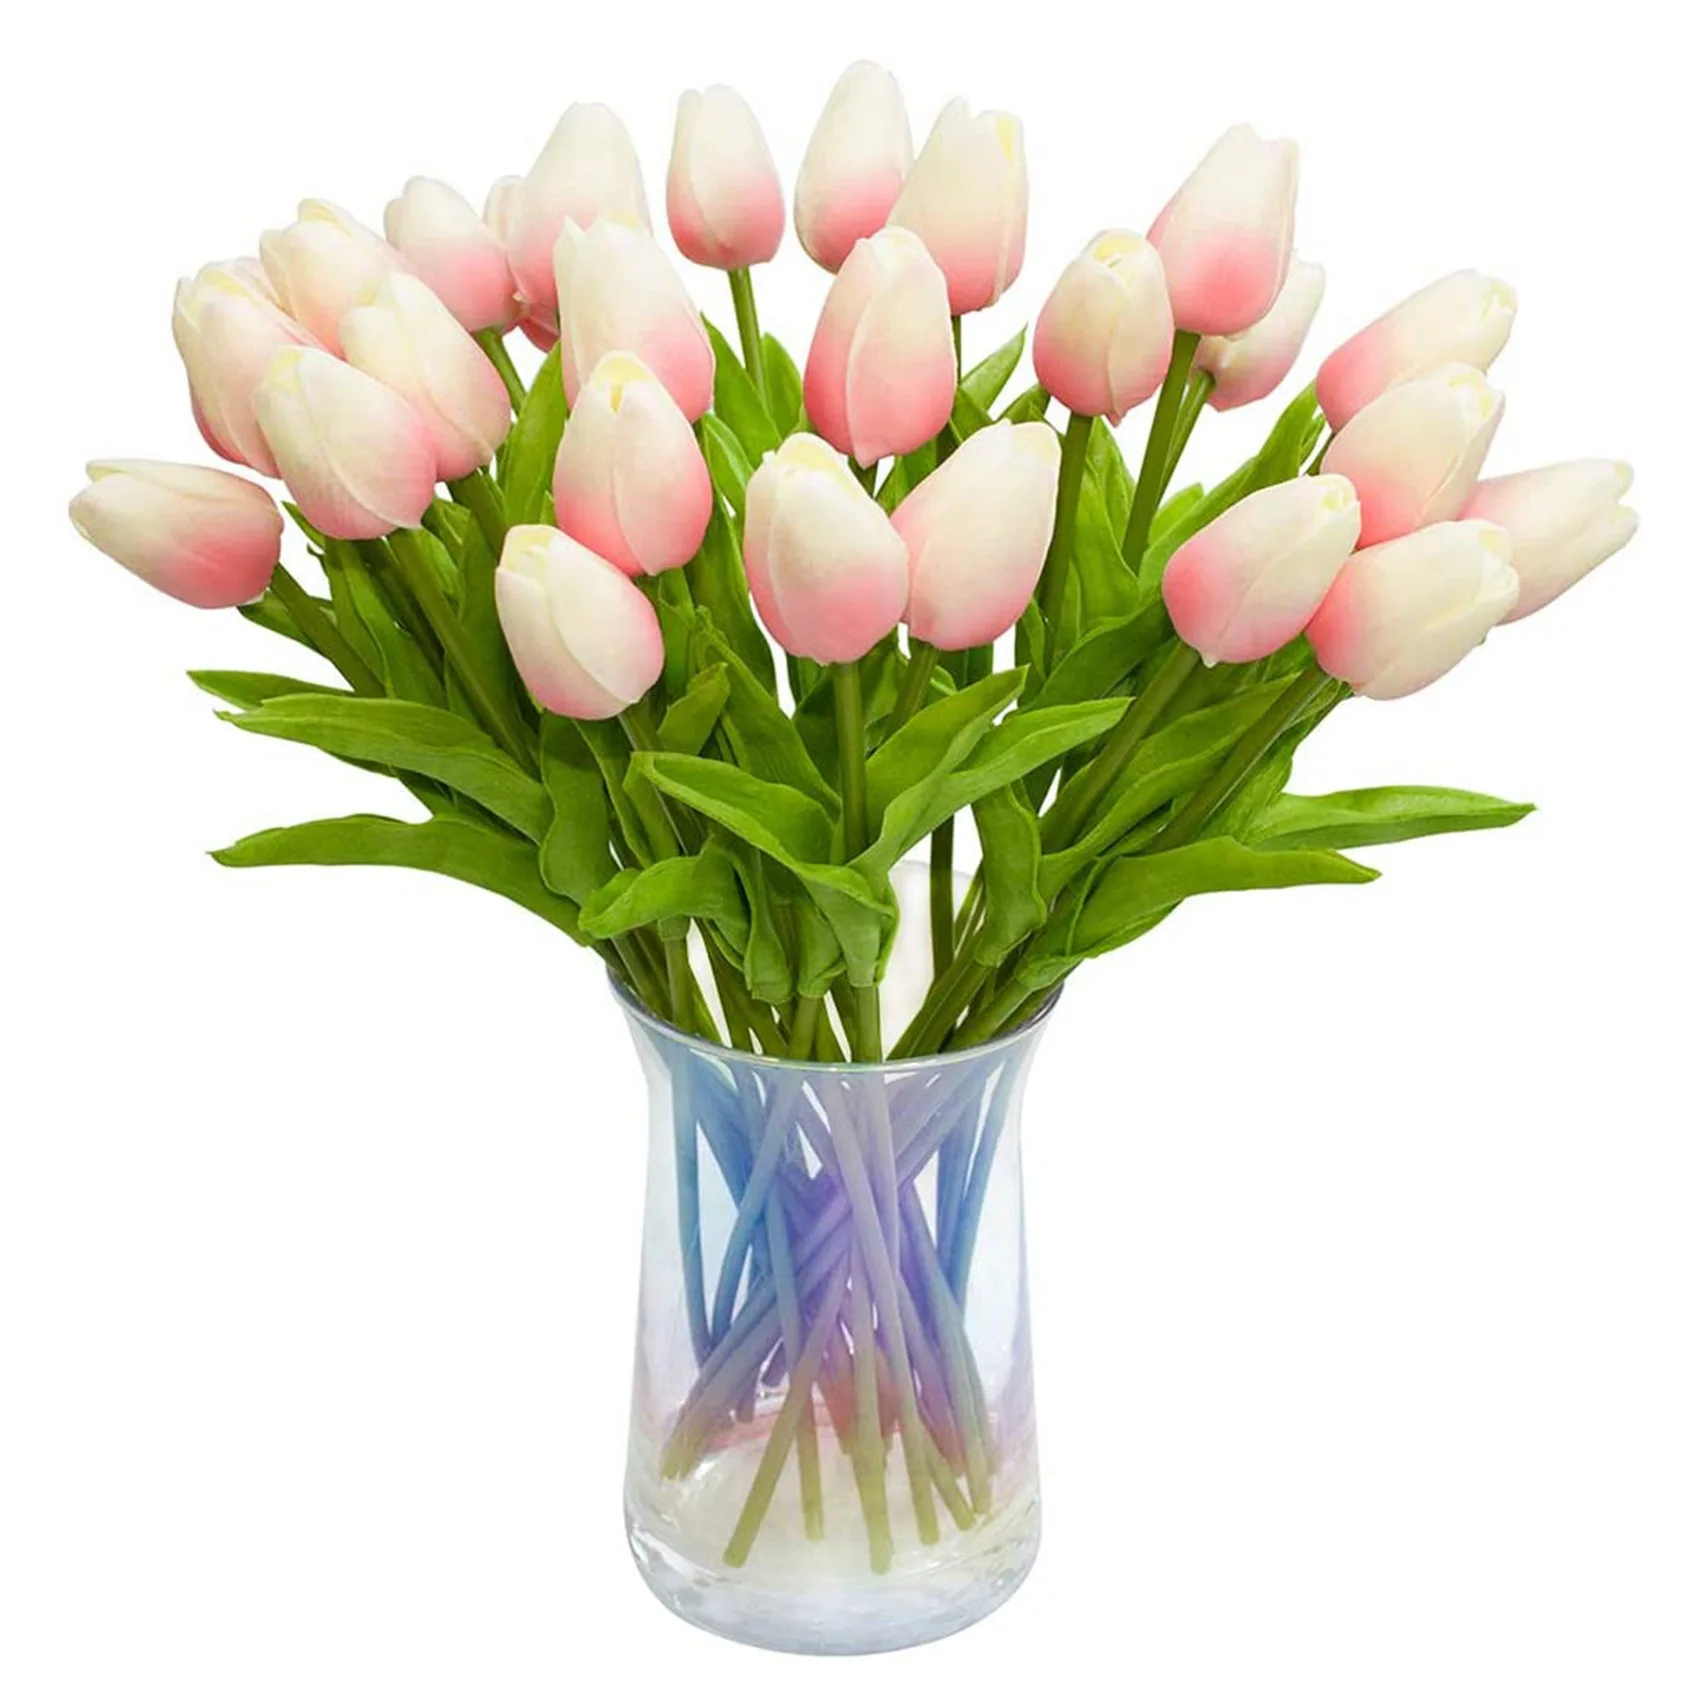 

30 шт. искусственные тюльпаны, цветы, настоящие на ощупь, тюльпаны, искусственные голландские, полиуретановые тюльпаны, букет, латексные цветы, белый тюльпан (стандартно розовый)